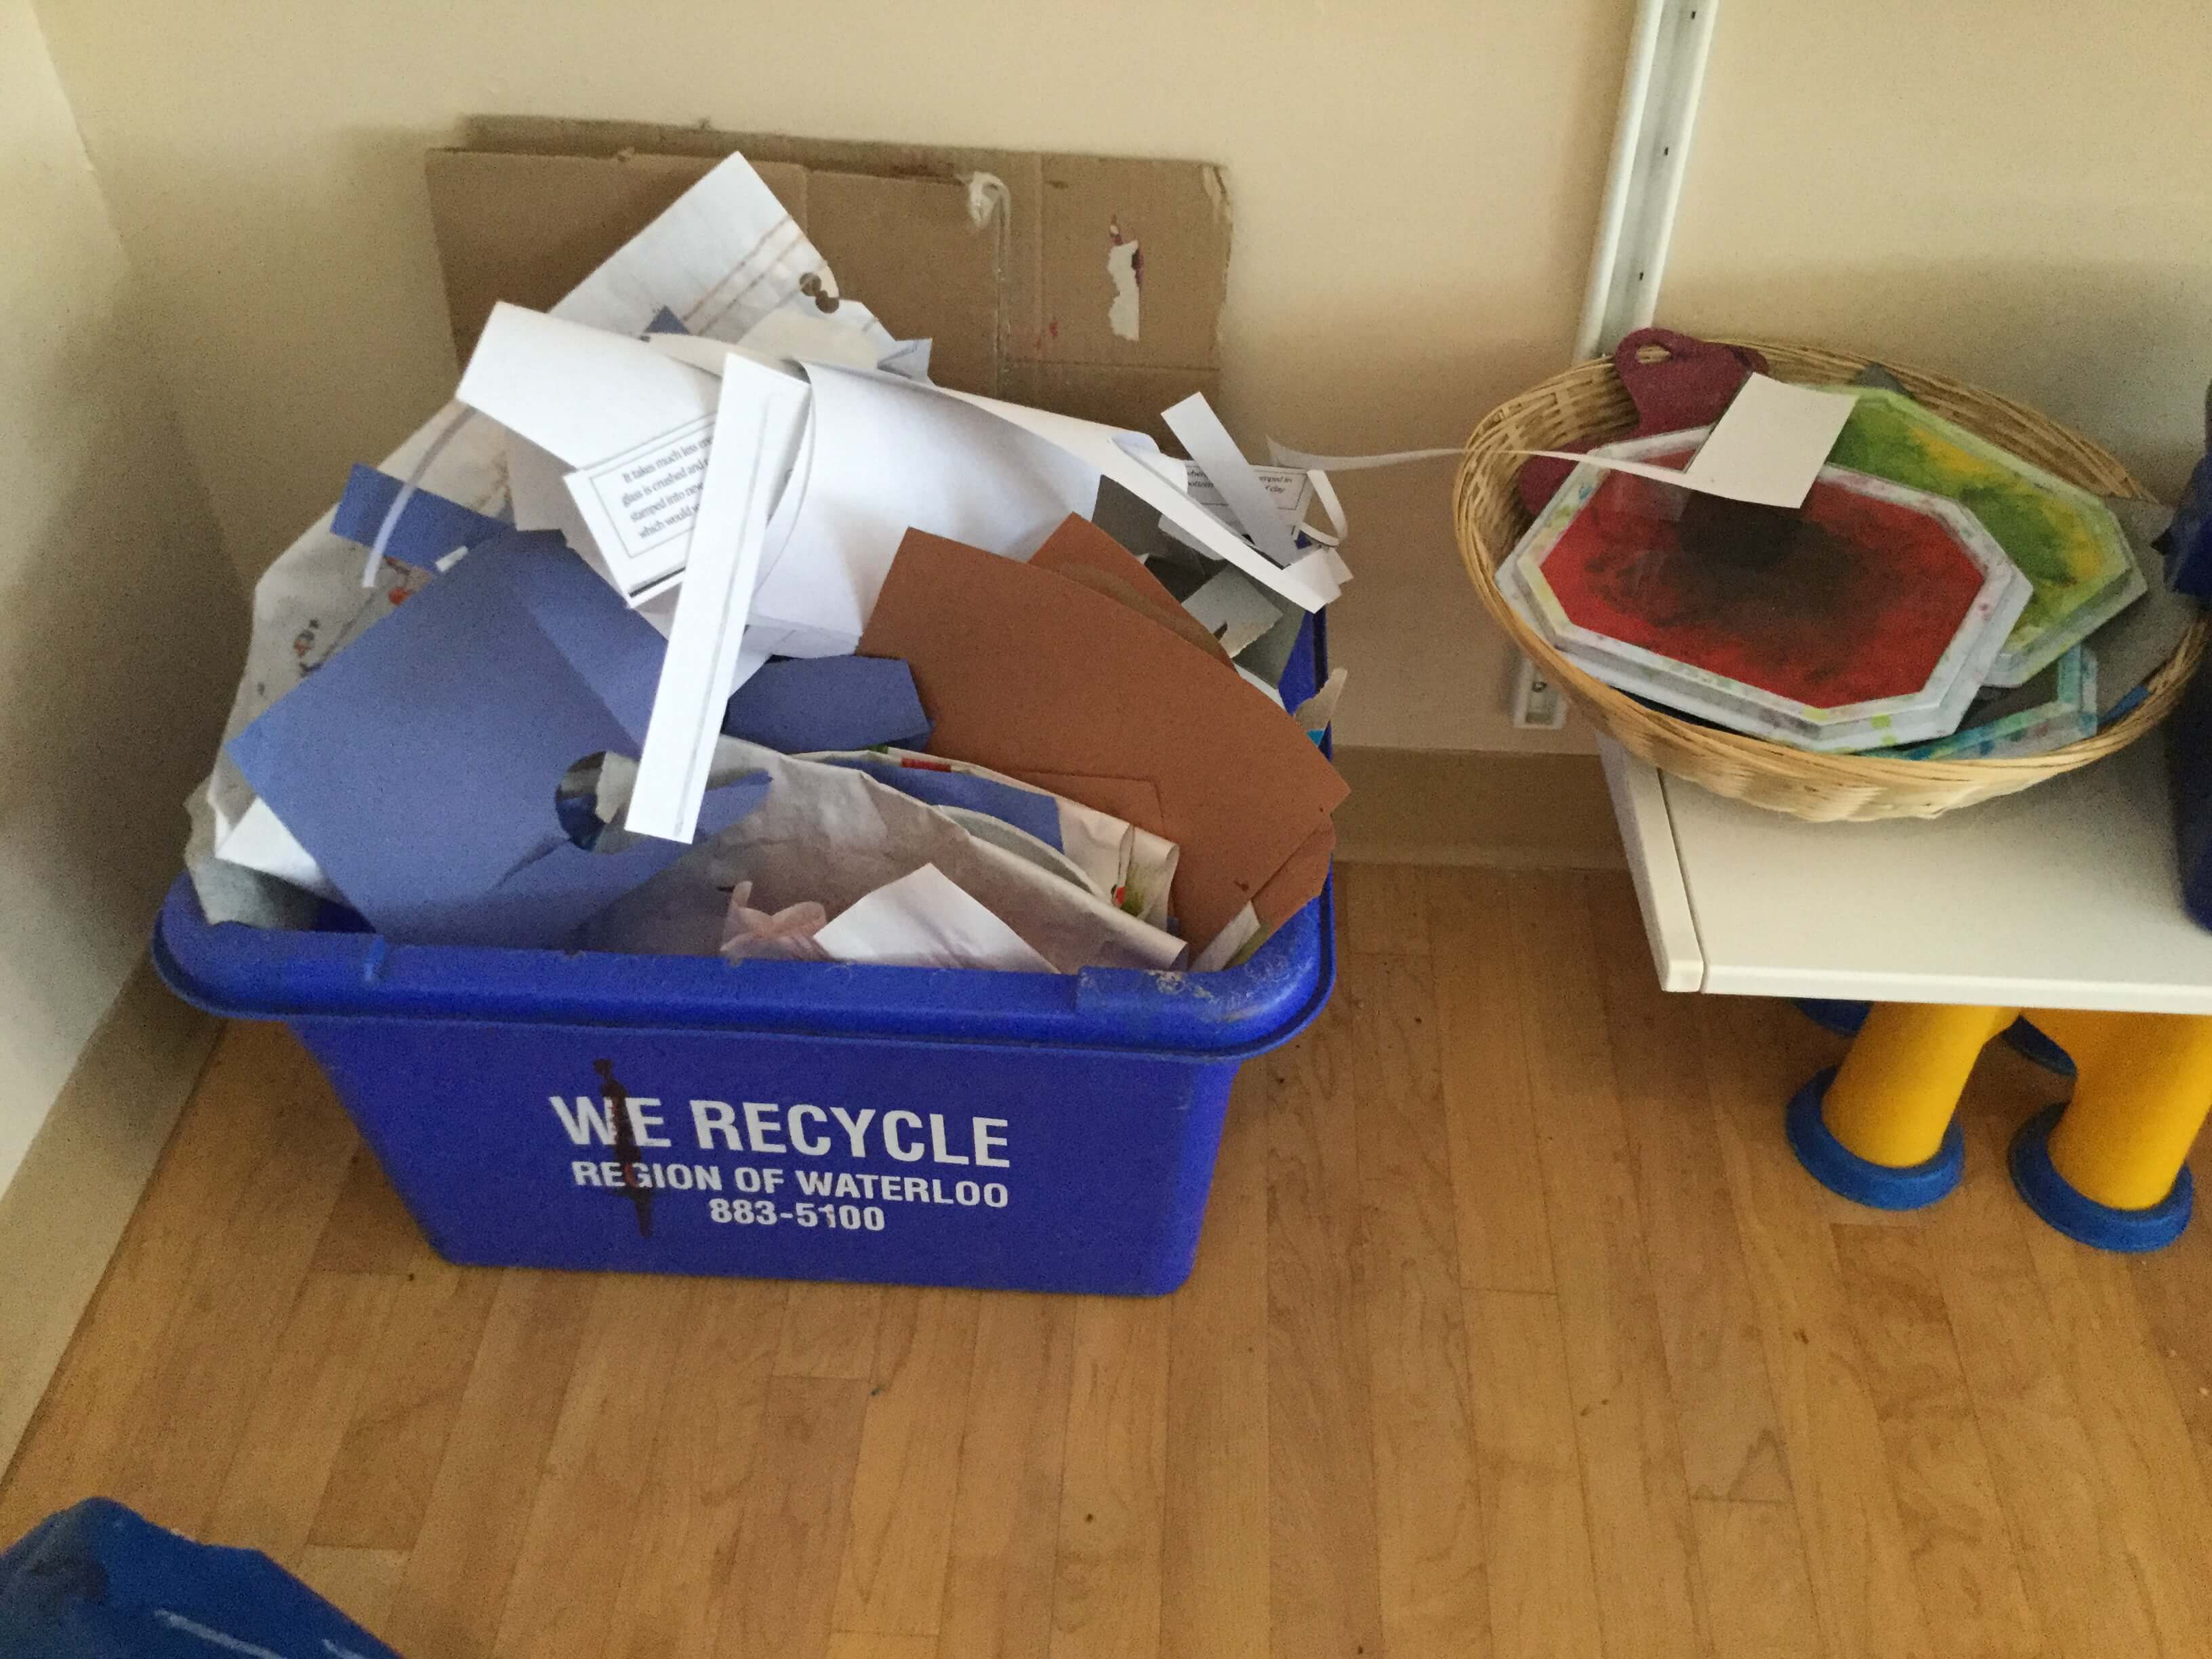 a full recycle blue bin